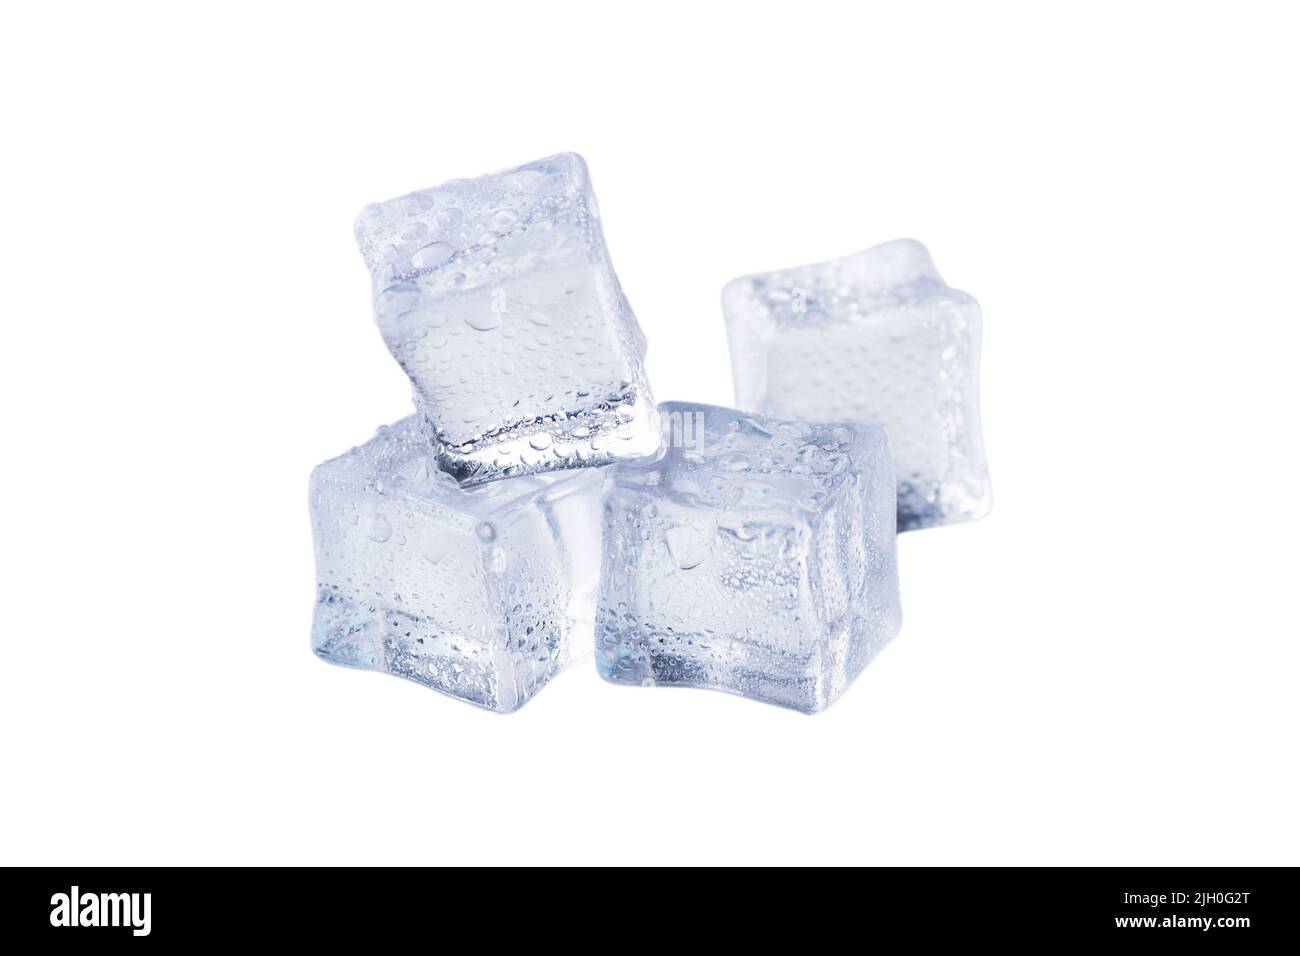 Schmelzende Eiswürfel isoliert auf weißem Hintergrund. Eiswürfel für ein erfrischendes Getränk. Stockfoto